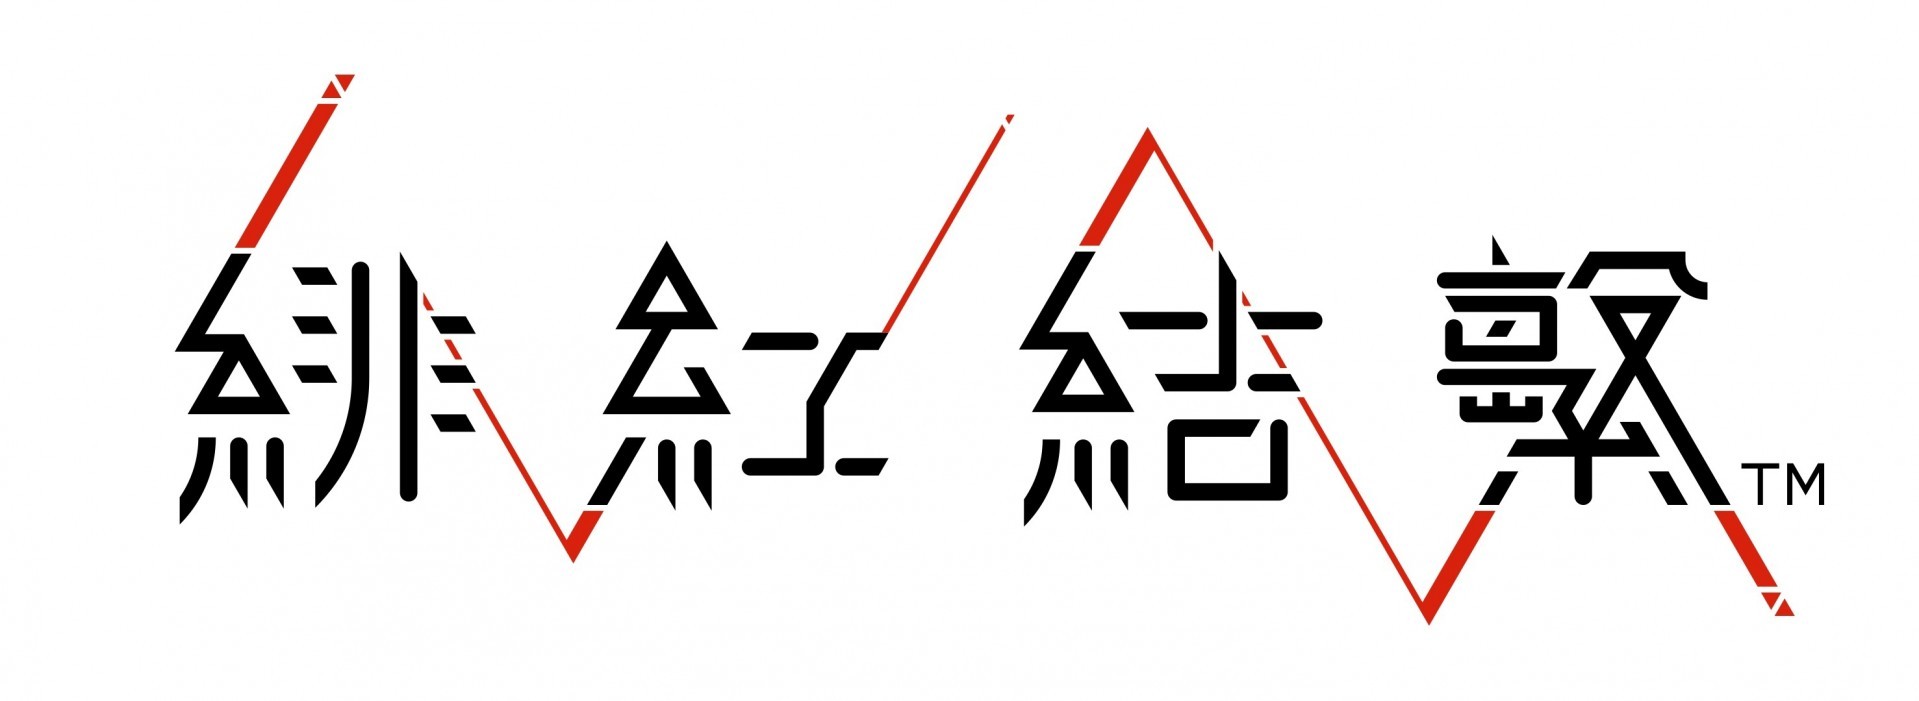 《绯红结系》繁中体验版 5 月 21 日发布 公开最新情报及双主角声优宣传影片